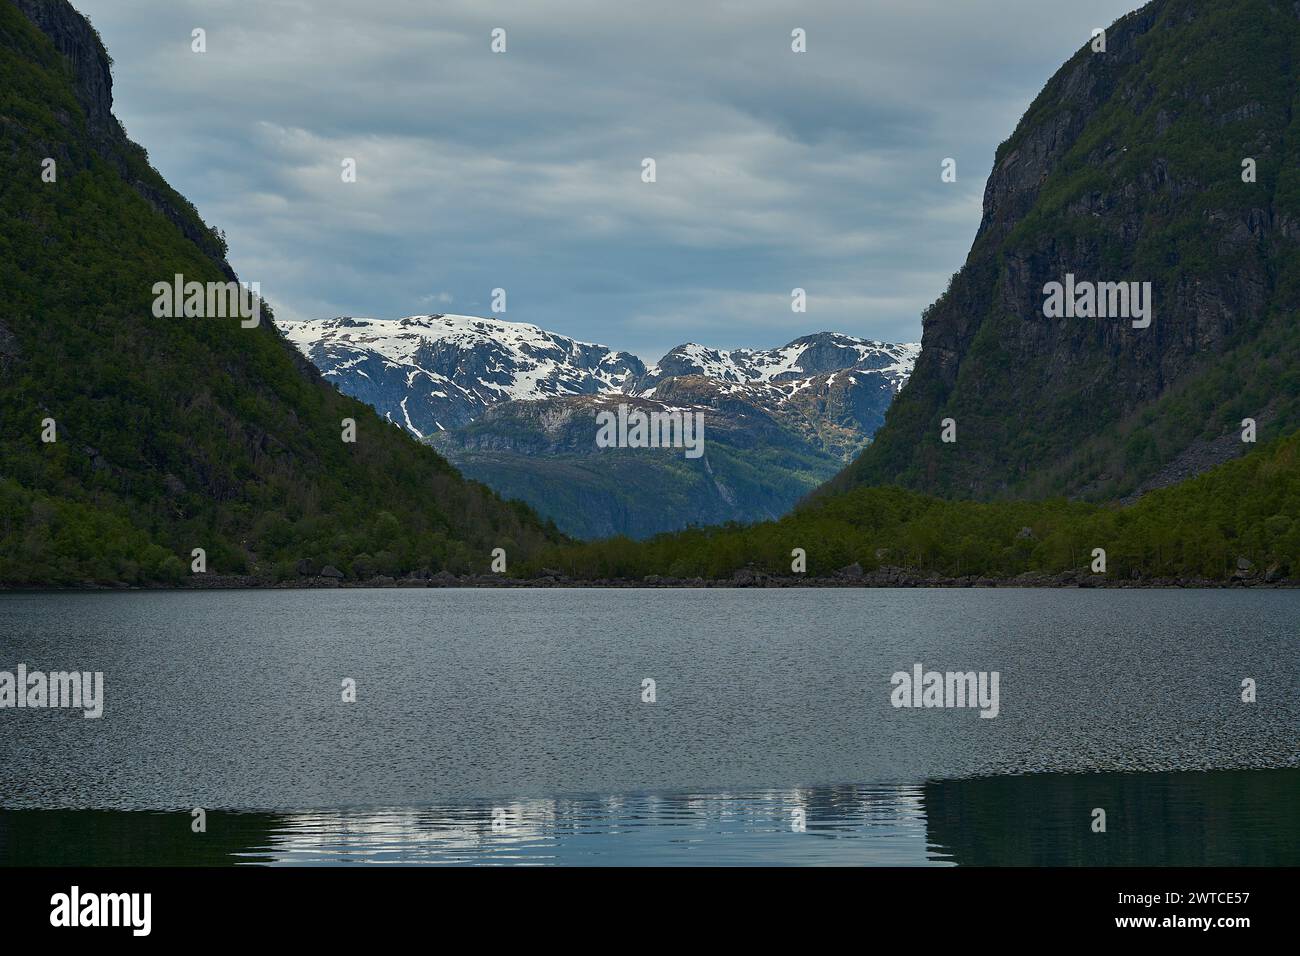 Magnifique lac de montagne Bondhus Vatnet au pied d'un glacier bleu dans les hautes terres de Norvège, destination de voyage populaire pour les amoureux de la nature et de la randonnée Banque D'Images